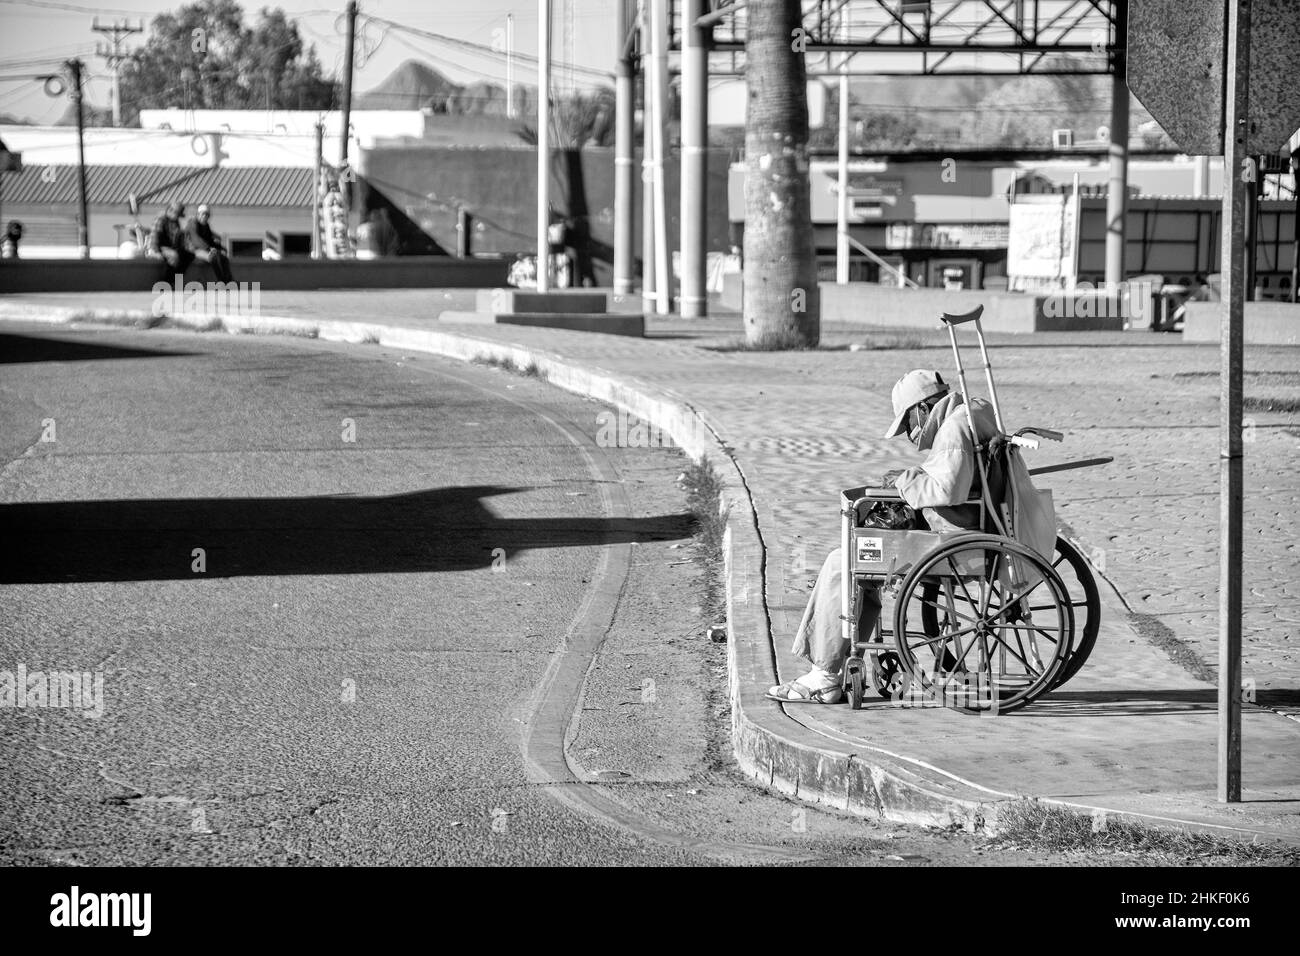 Un uomo messicano in una sedia a rotelle trascorre le sue giornate raccogliendo rifiuti lungo le grondaie delle strade di Puerto Penasco, sonora, Baja California, Messico. Foto Stock